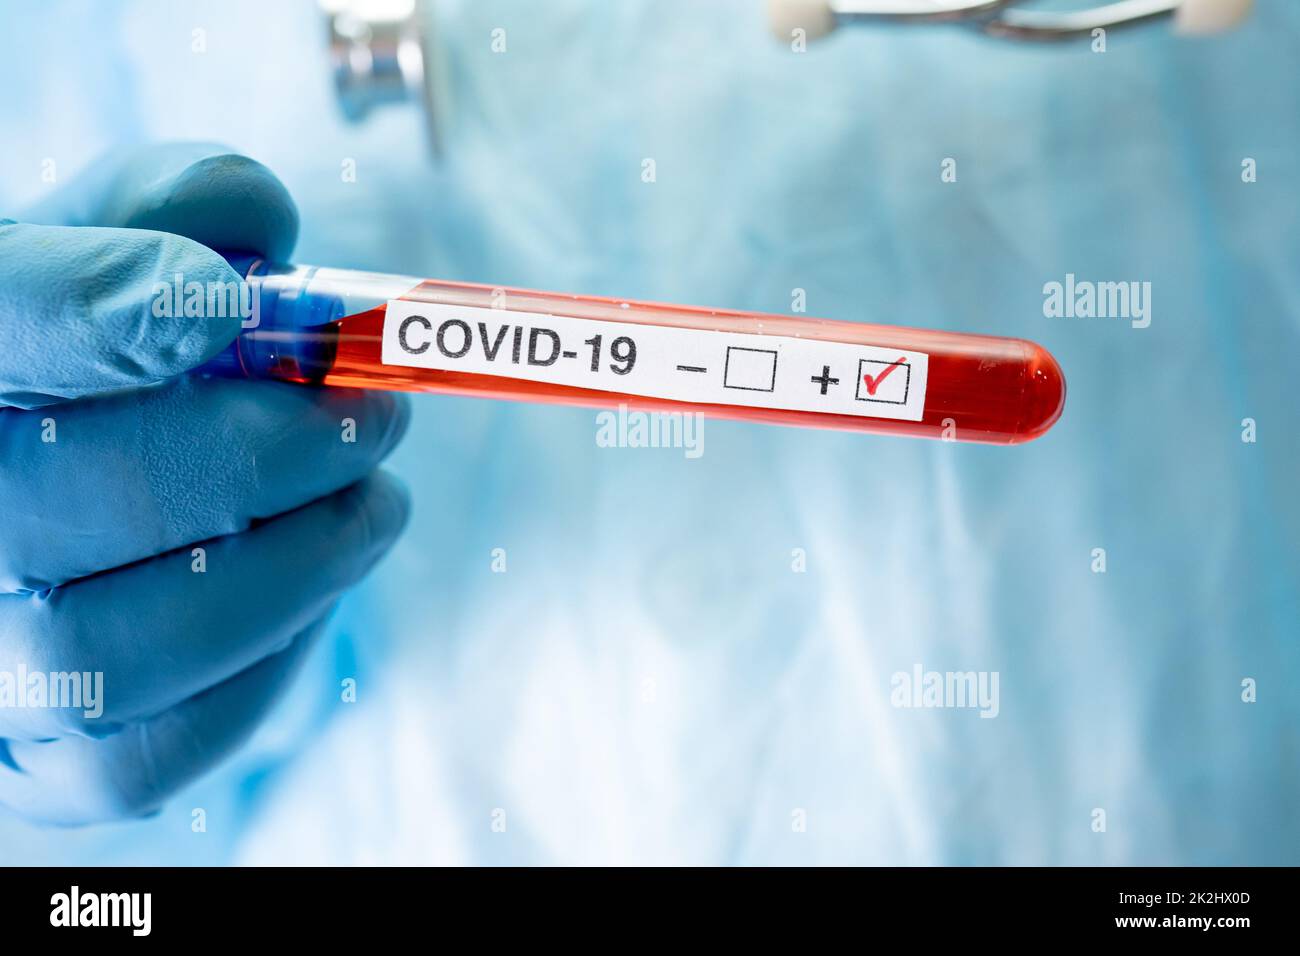 Échantillon positif d'infection sanguine dans une éprouvette pour covid19 coronavirus en laboratoire. Scientifique chargé de vérifier et d'analyser la présence d'un patient à l'hôpital. Banque D'Images